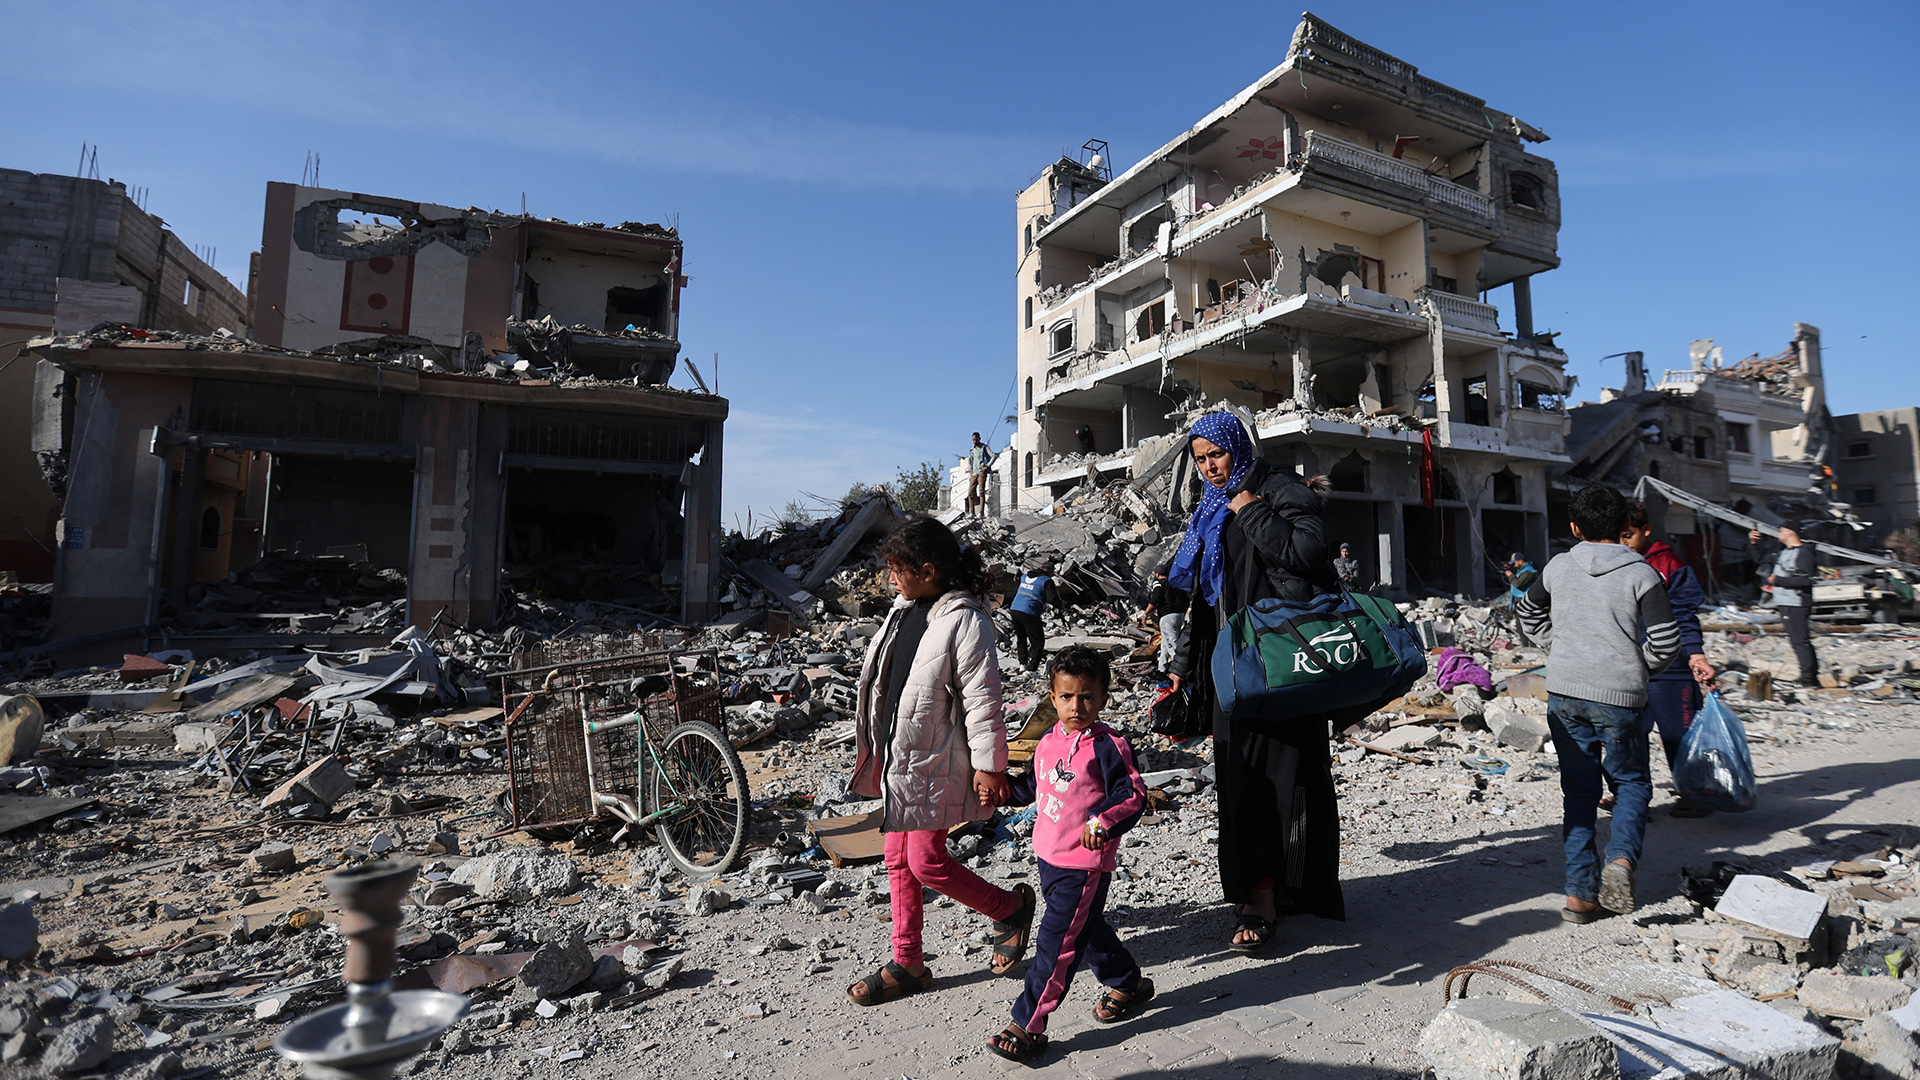 Vertriebene Palästinenser kehren in ihre Häuser zurück, während sie an einem zerstörten Haus in Khan Yunis vorbeigehen.